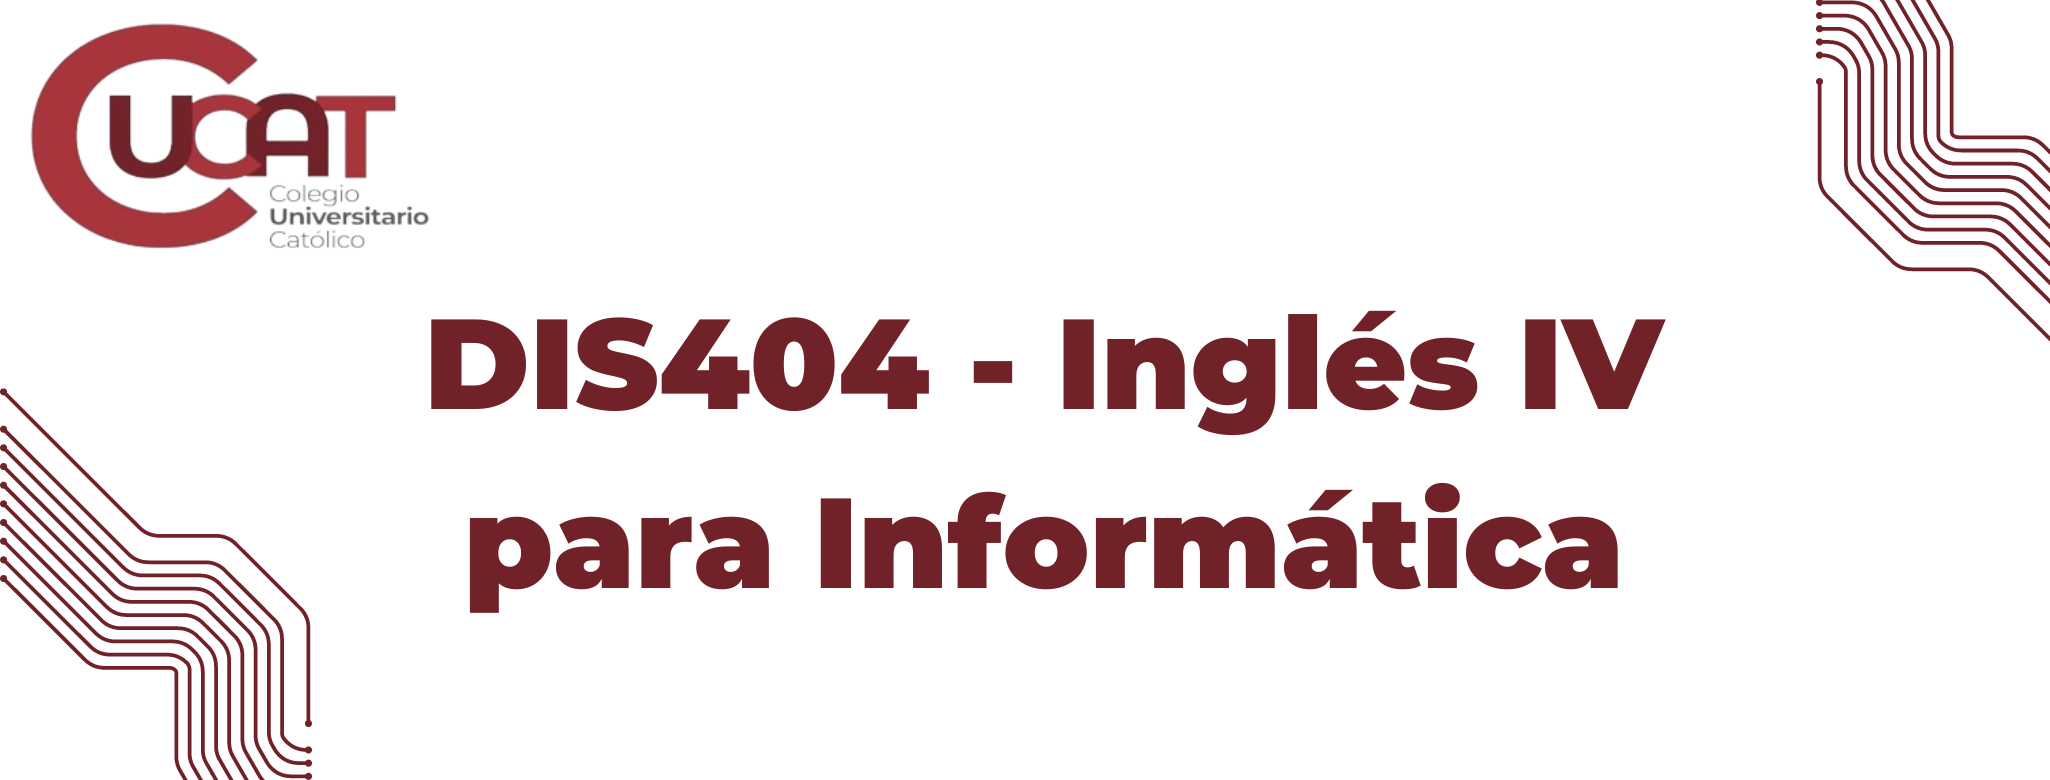 DIS404-Inglés IV para Informática